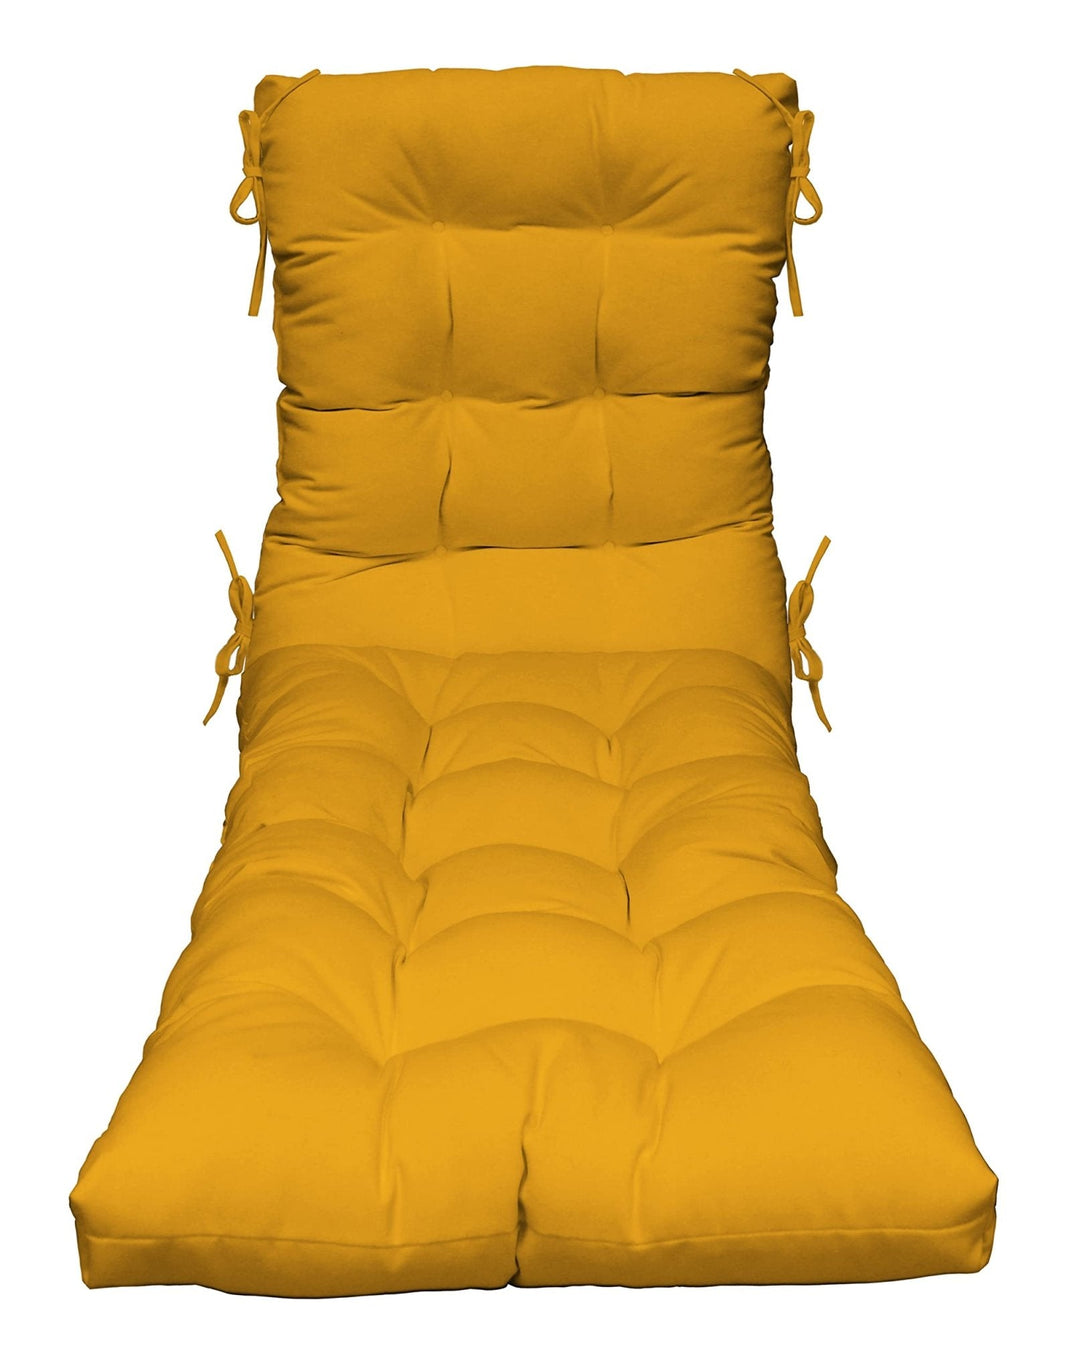 Chaise Lounge Chair Cushion | Tufted | 72" H x 22" W | Sunbrella Canvas Sunflower Yellow - RSH Decor